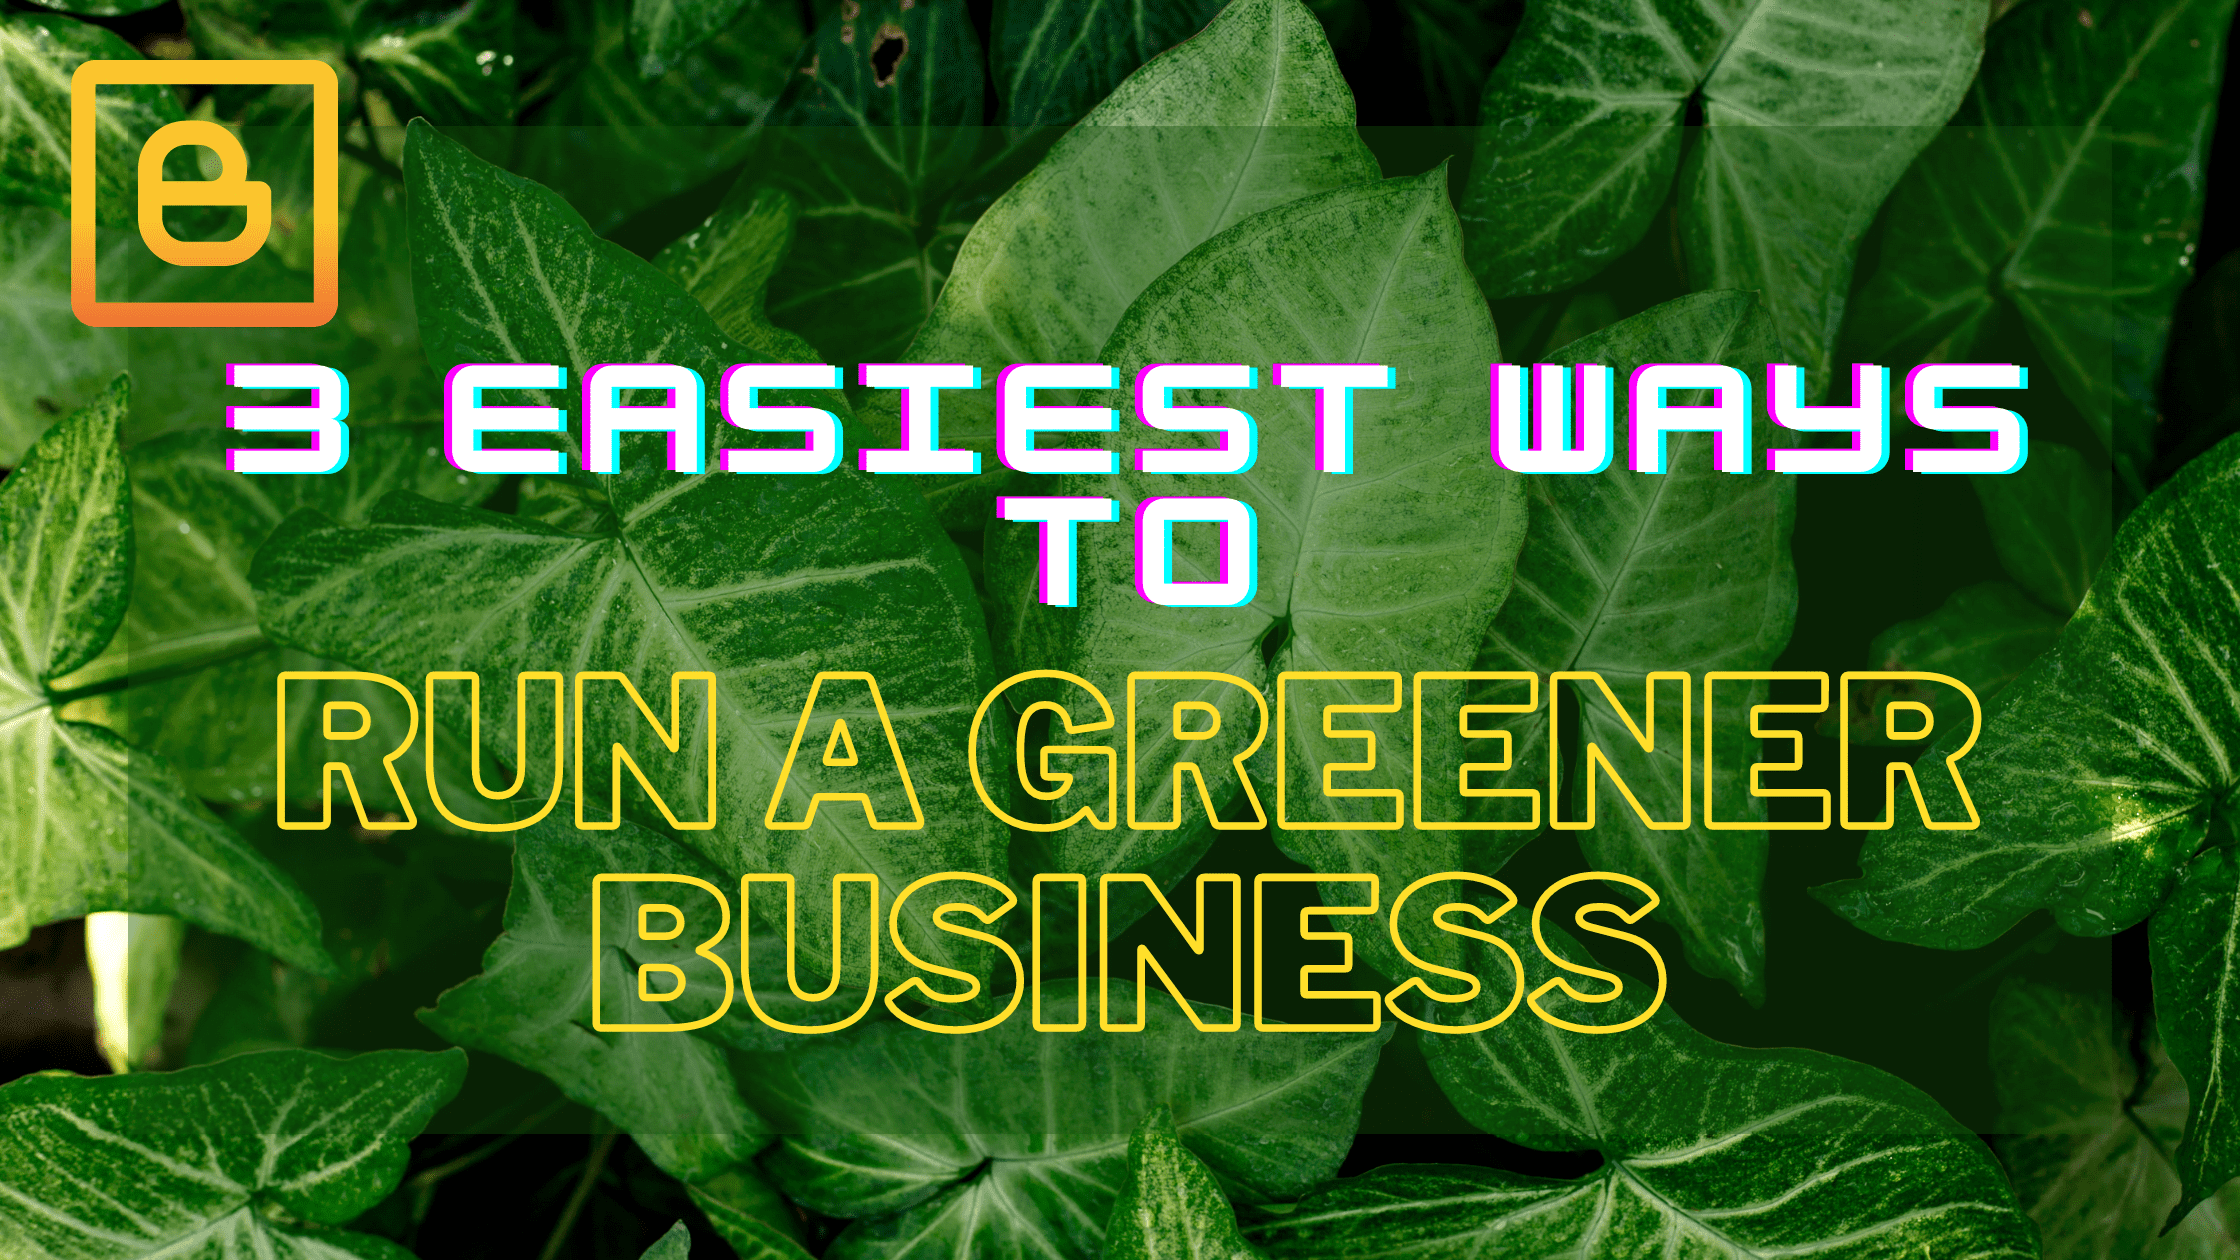 Run a Greener Business